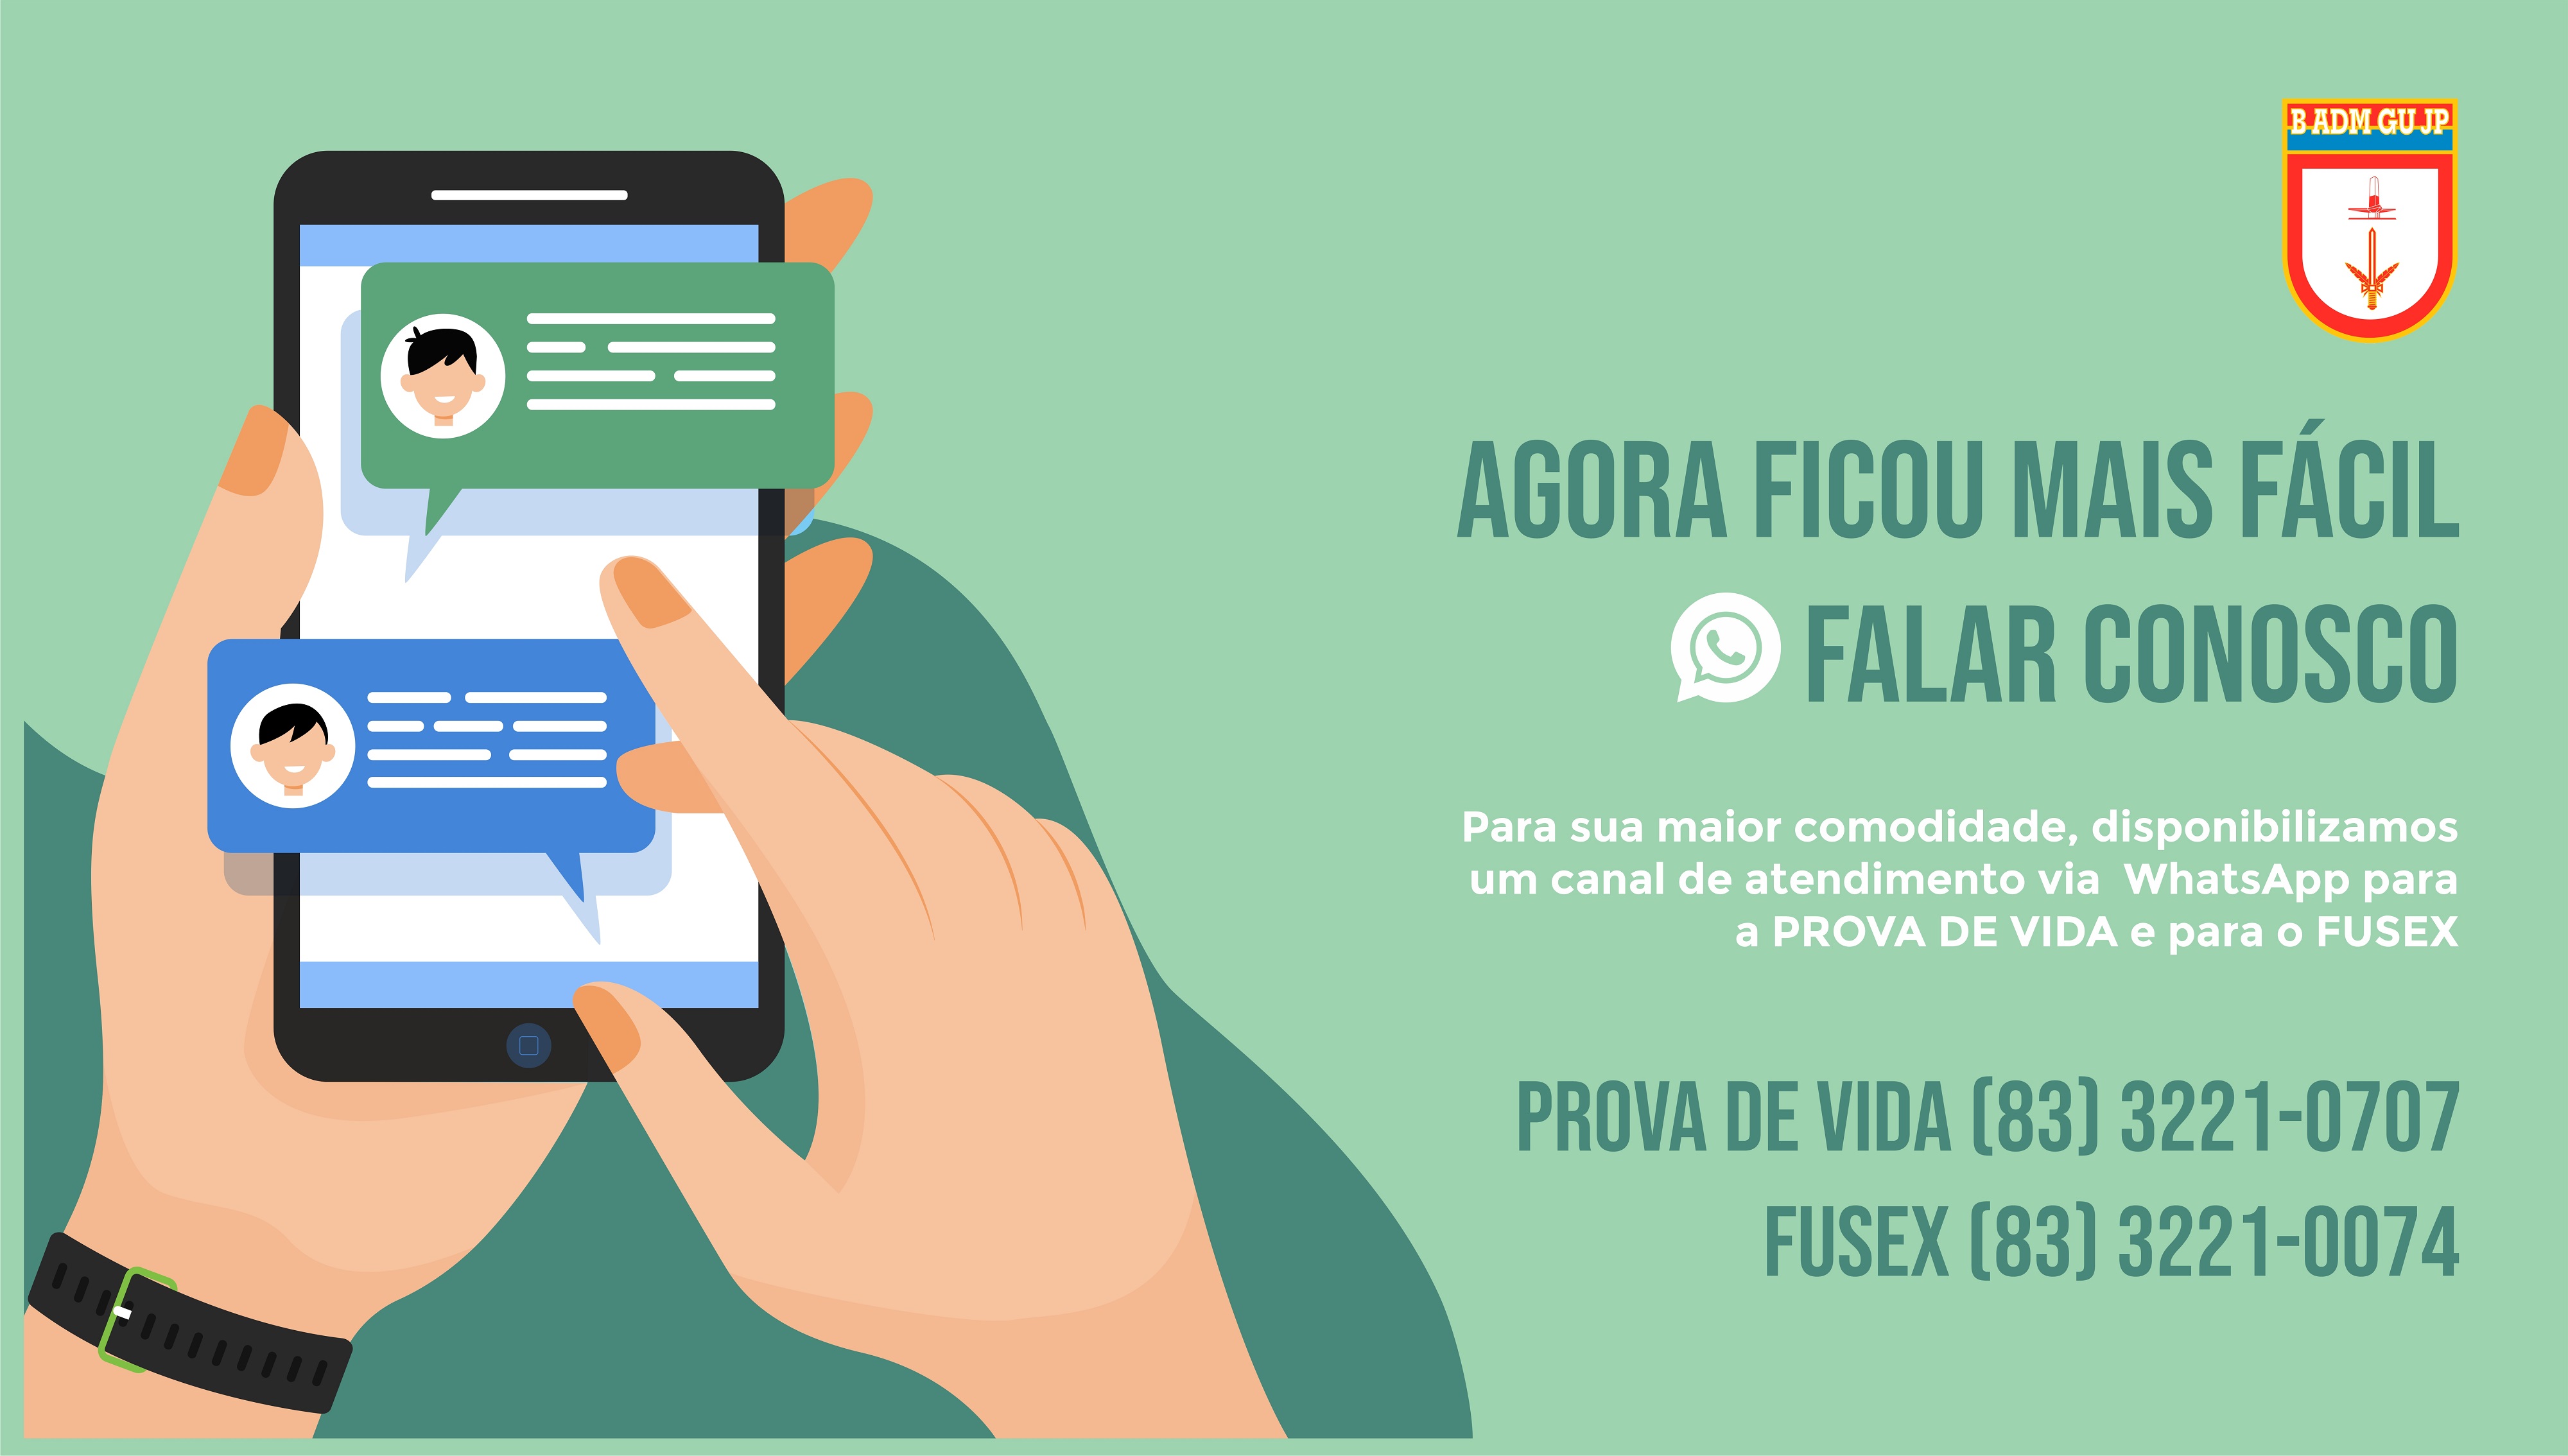 Whatsapp-Prova de Vida/FuSEx